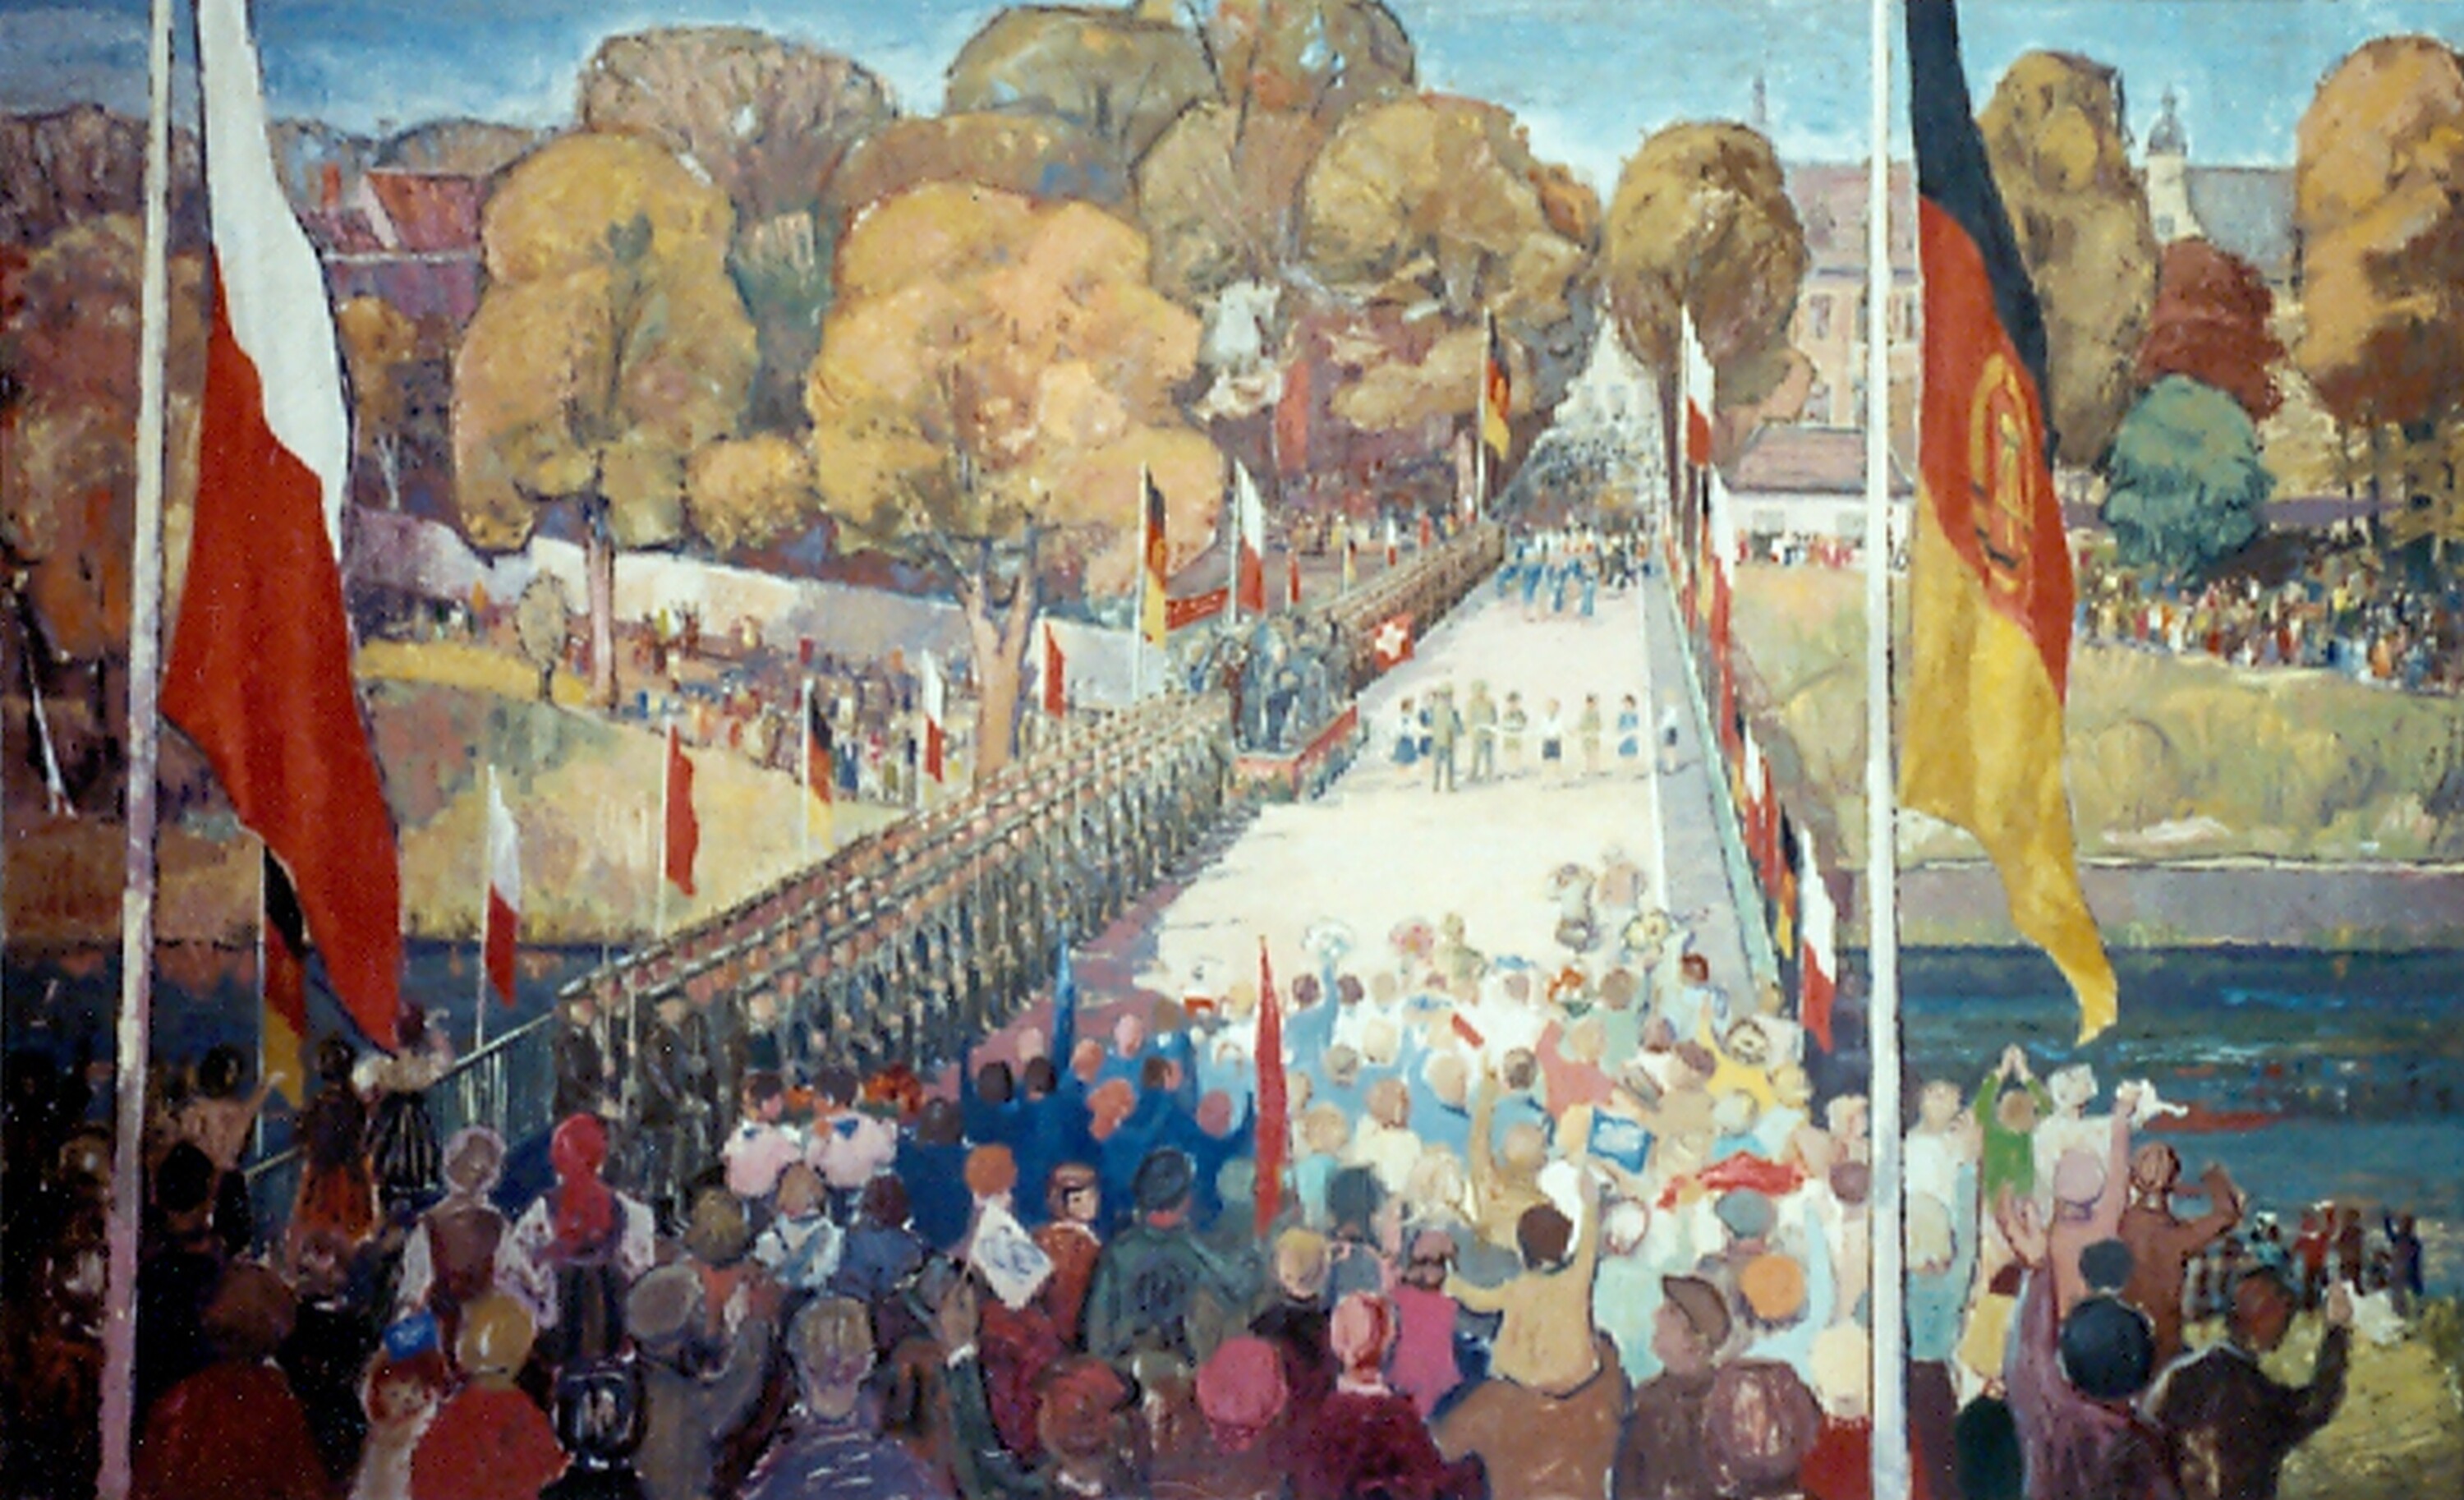 Gemälde: "Brücke der Freundschaft" (Kulturhistorisches Museum Görlitz CC BY-NC-SA)